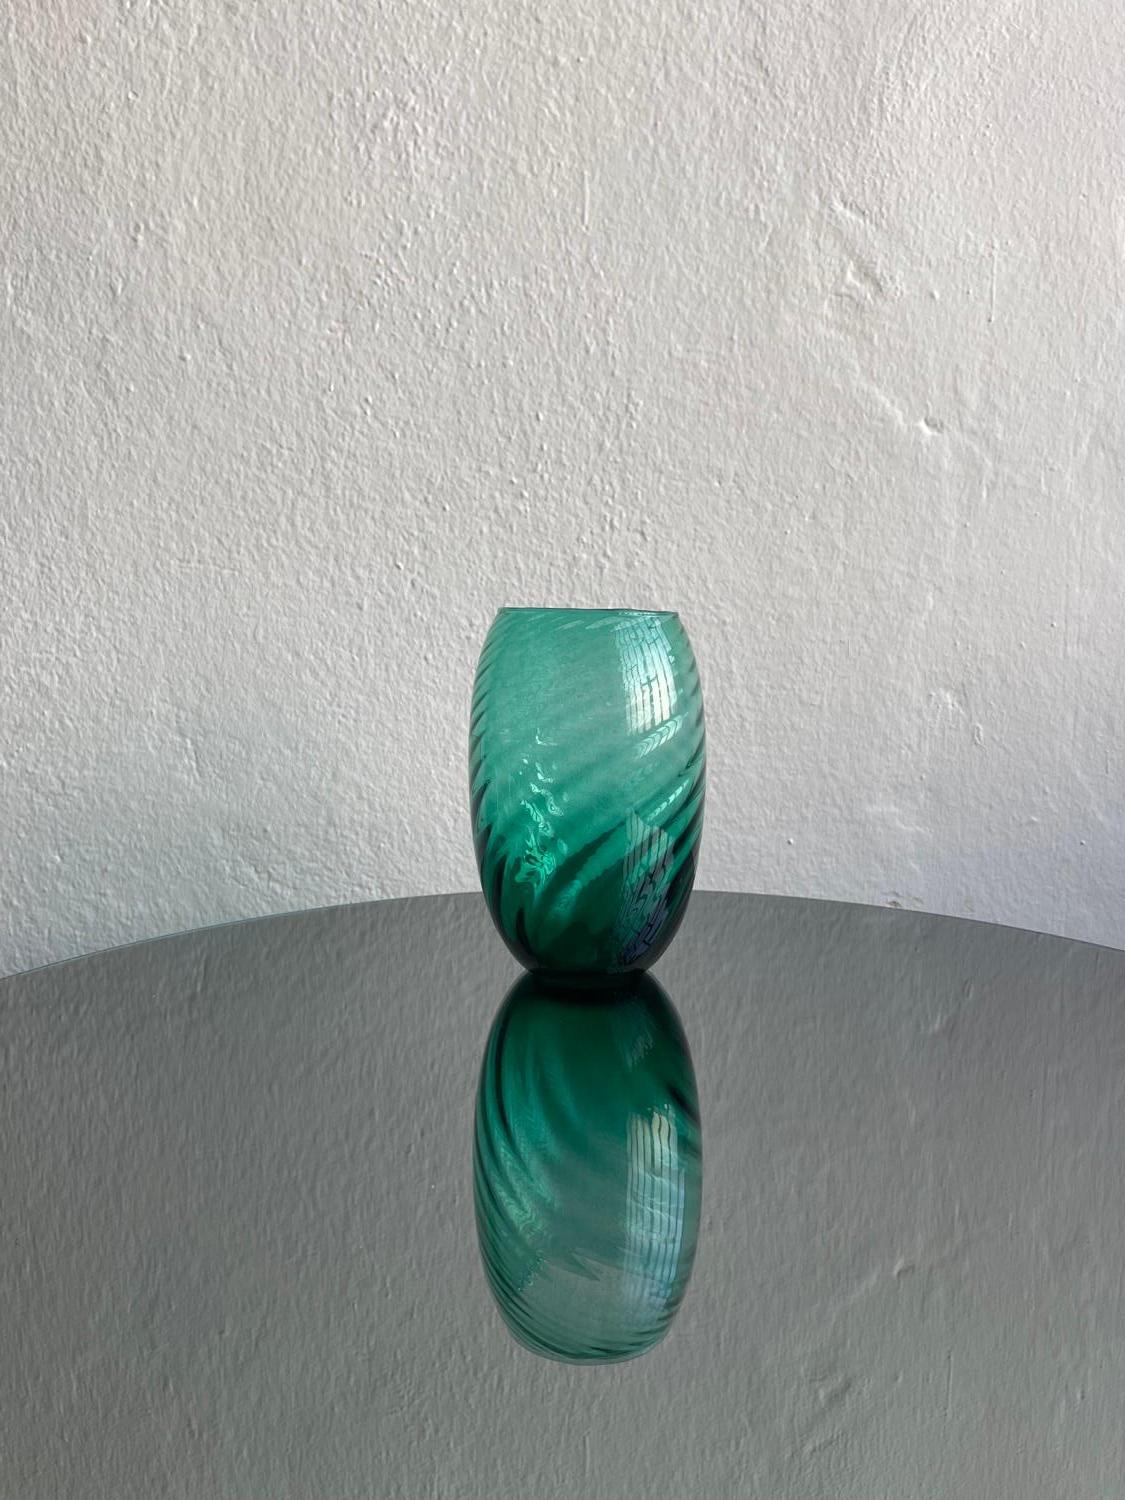 Vase en verre soufflé à la bouche - Vase en verre de Murano - Vase en spirale de Murano

Merveilleux vase vert en verre de Murano soufflé à la main, décoré d'un motif en spirale estampé qui court sur toute la surface. Un petit autocollant d'origine,